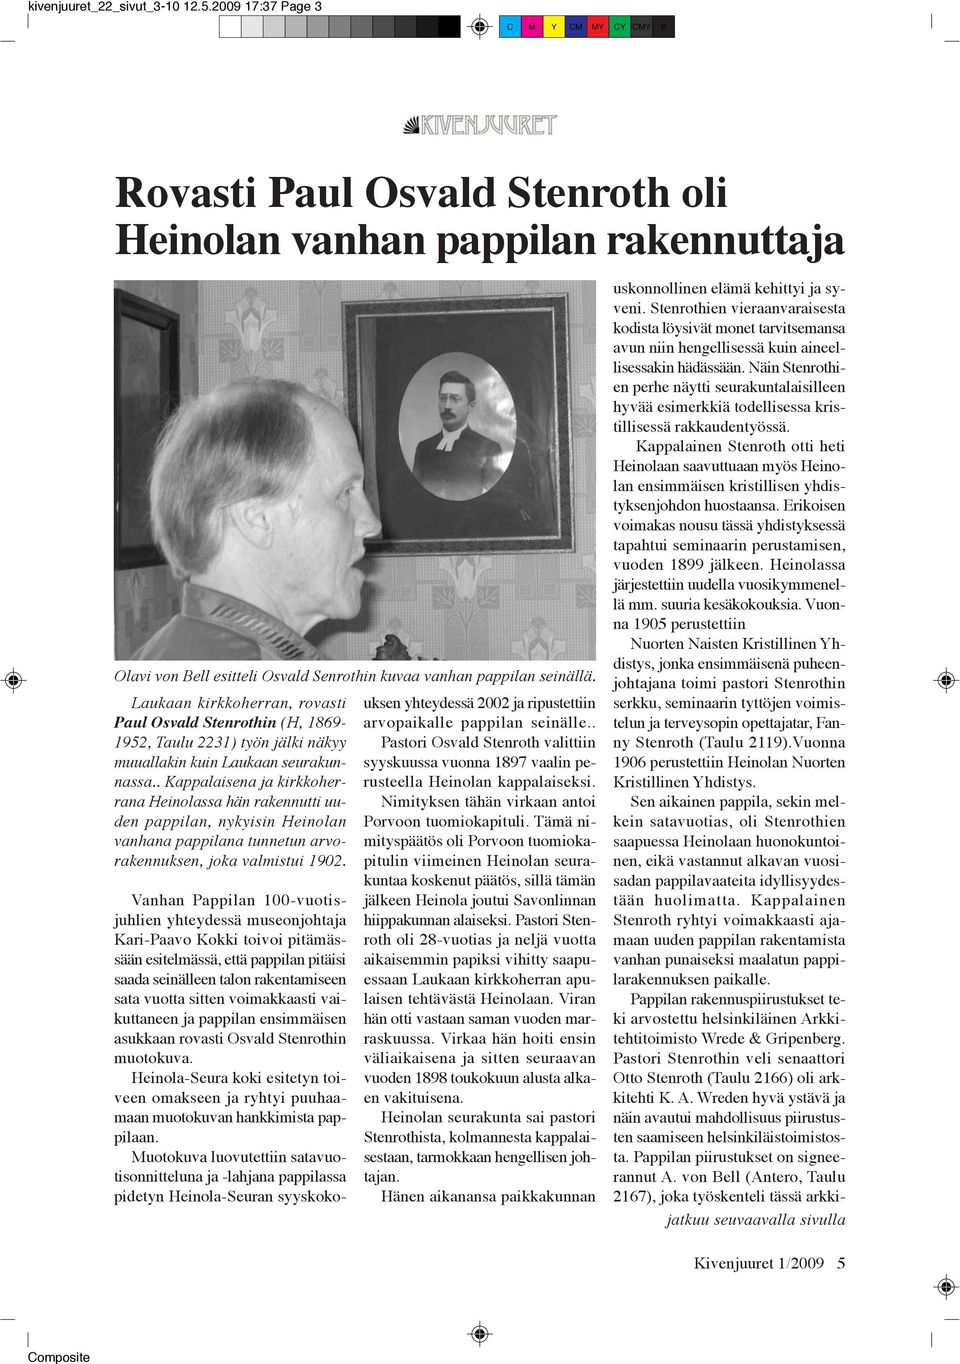 . Kappalaisena ja kirkkoherrana Heinolassa hän rakennutti uuden pappilan, nykyisin Heinolan vanhana pappilana tunnetun arvorakennuksen, joka valmistui 1902.